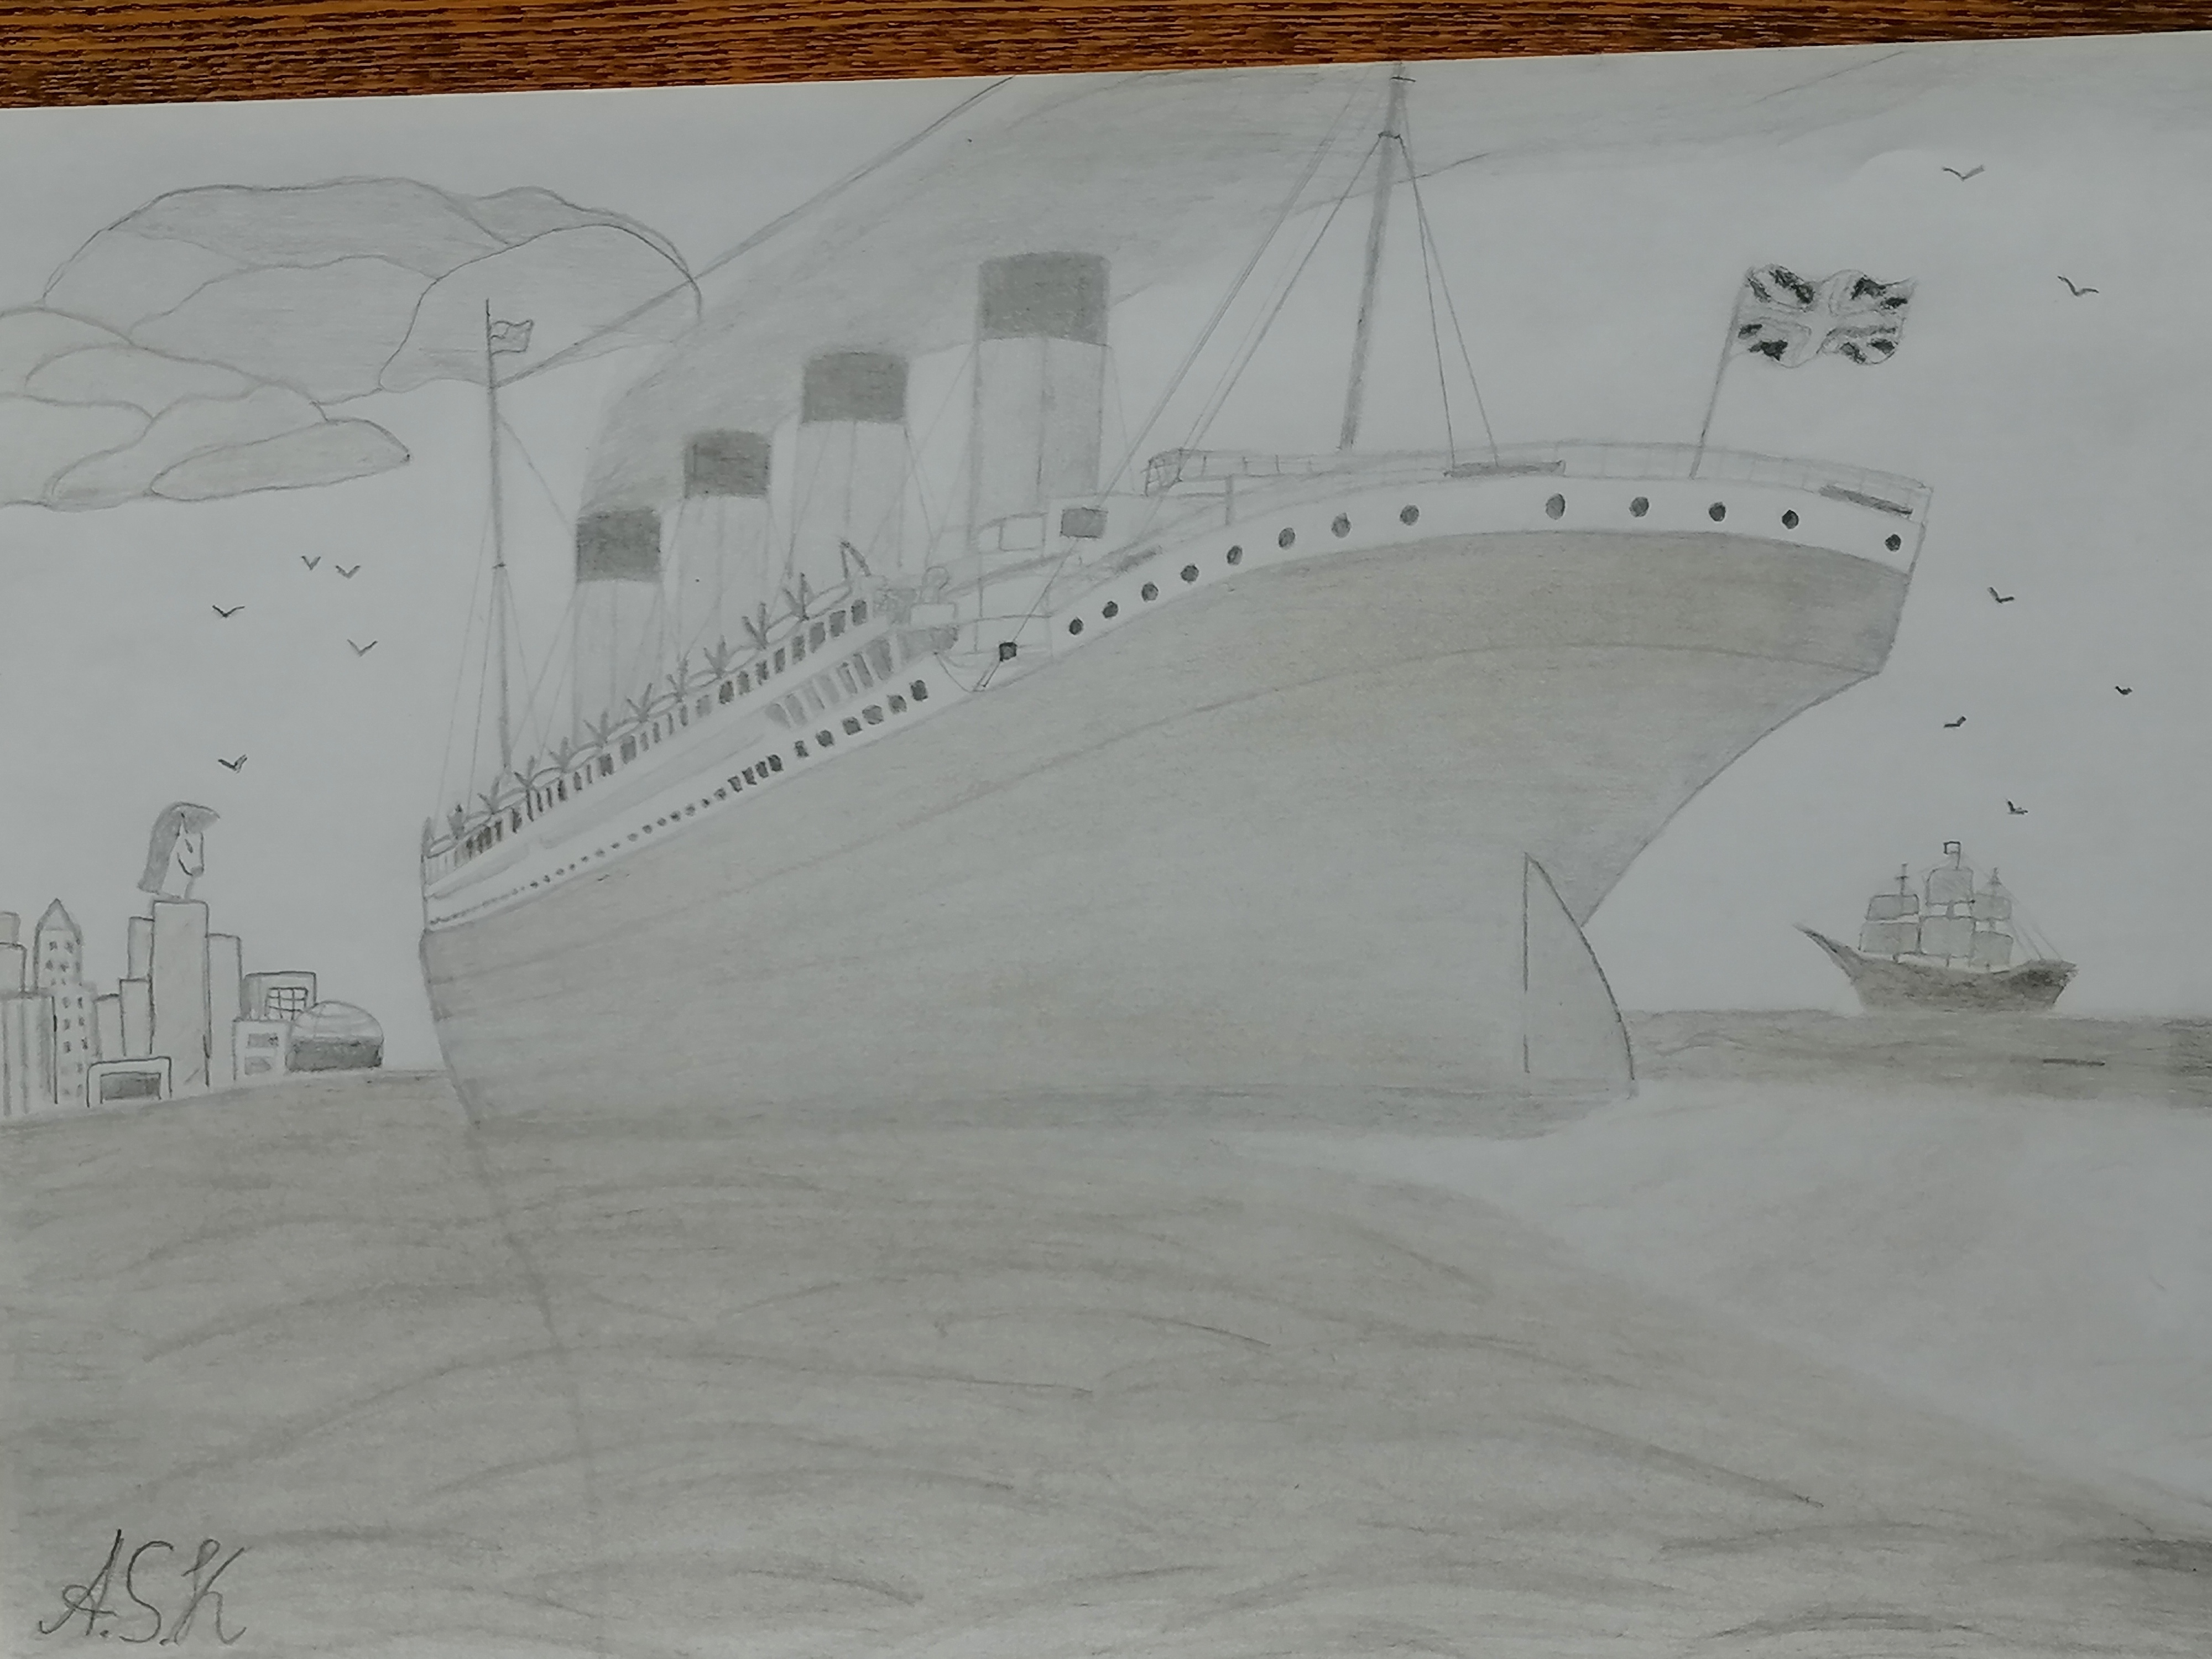 tall ship pencil sketch by rwysig on DeviantArt